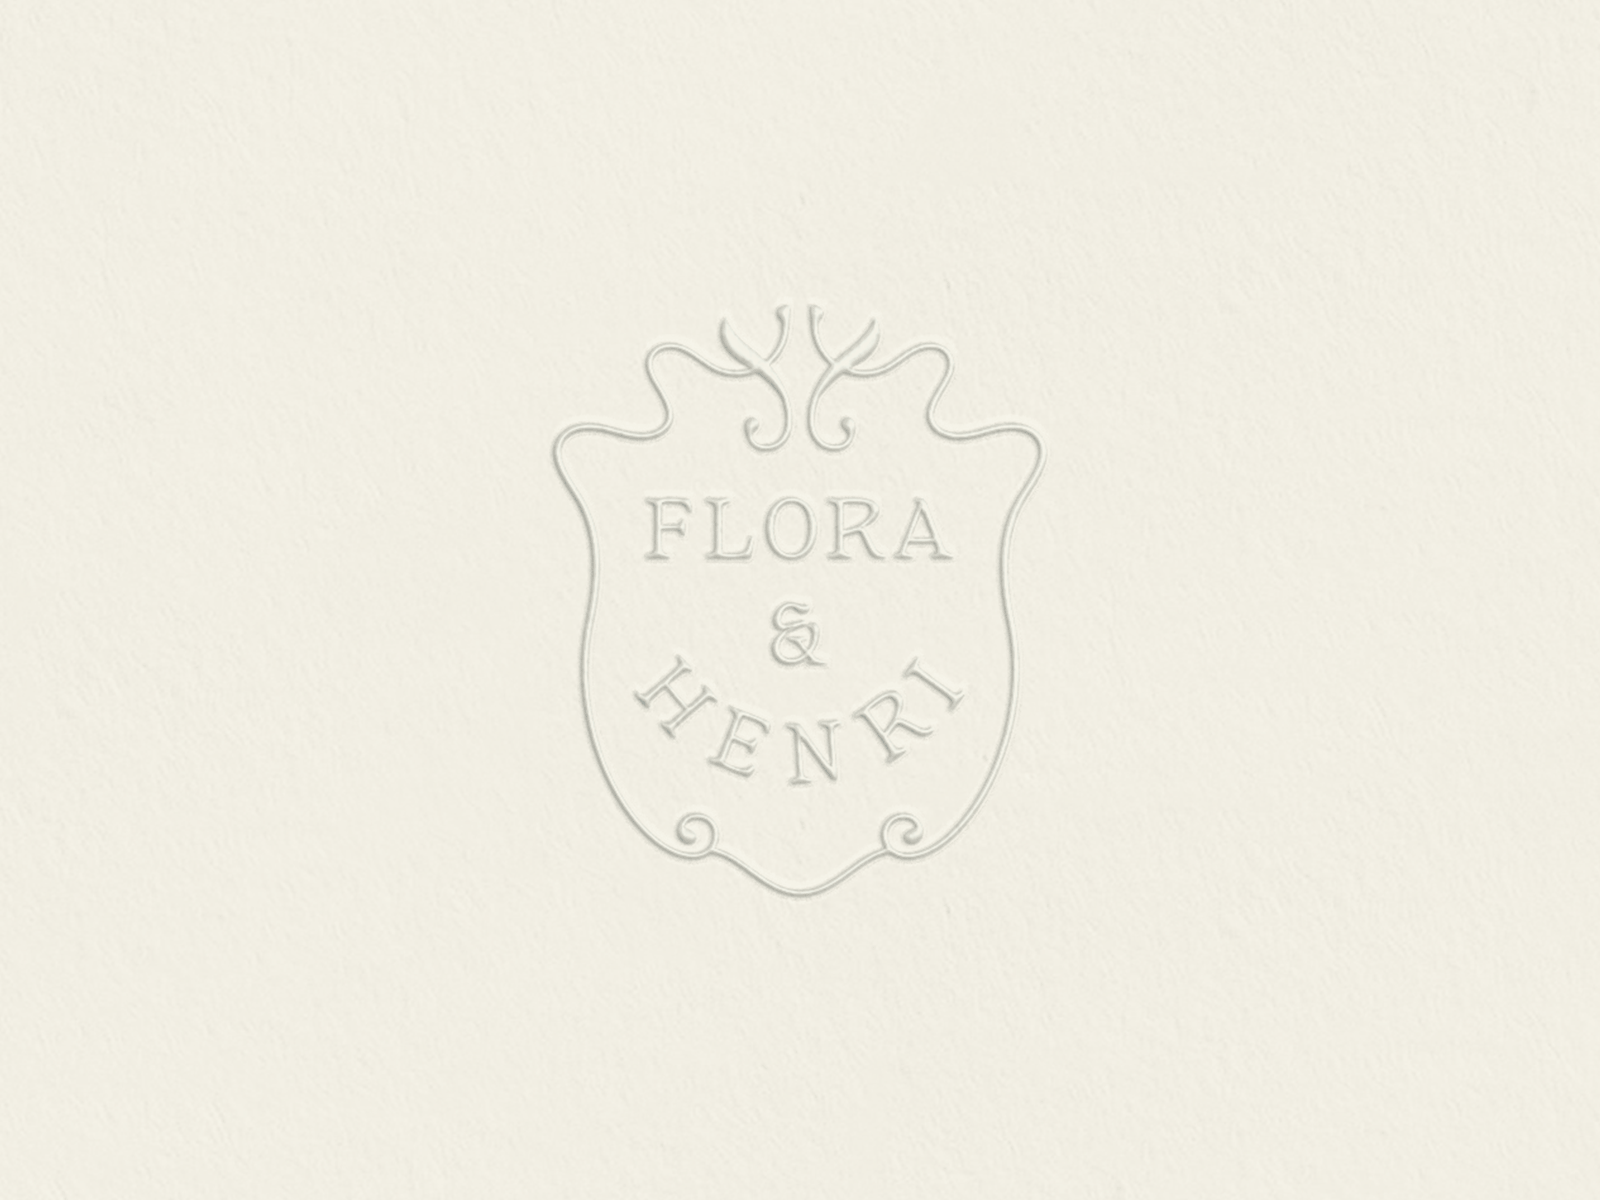 Flora & Henri art nouveau boutique branding container crest custom type flora henri identity logo seattle shield